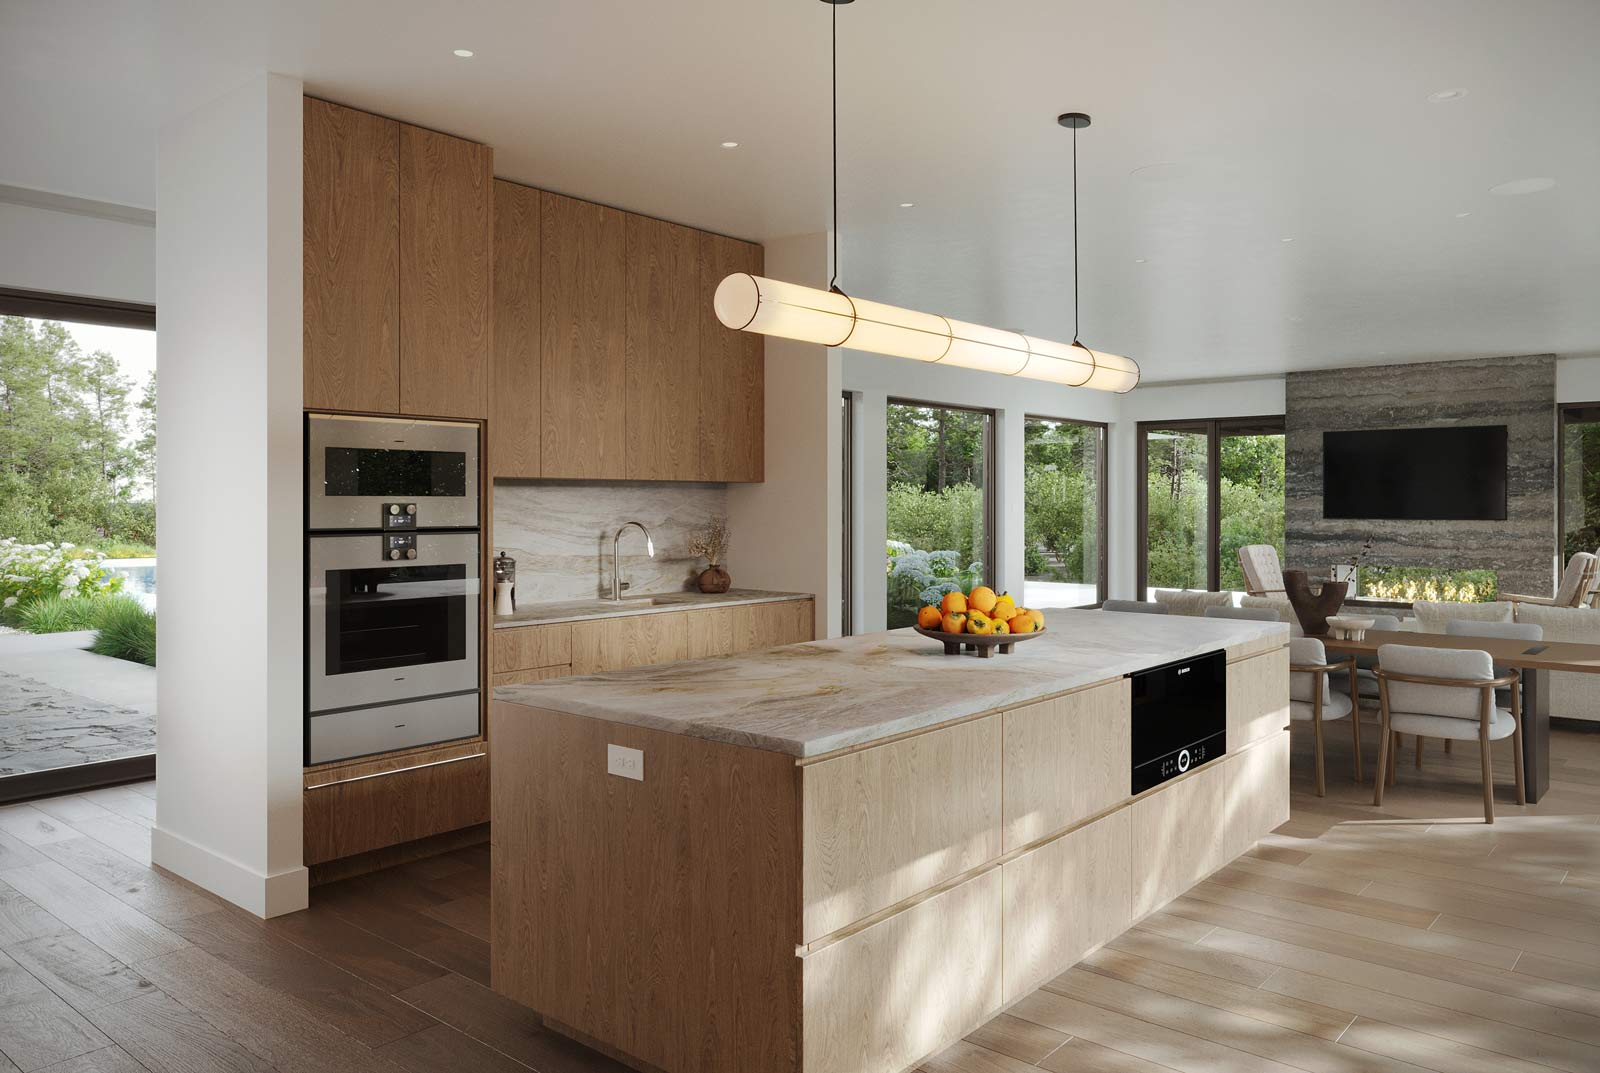 warm organic modern kichen interiors in long island modern home